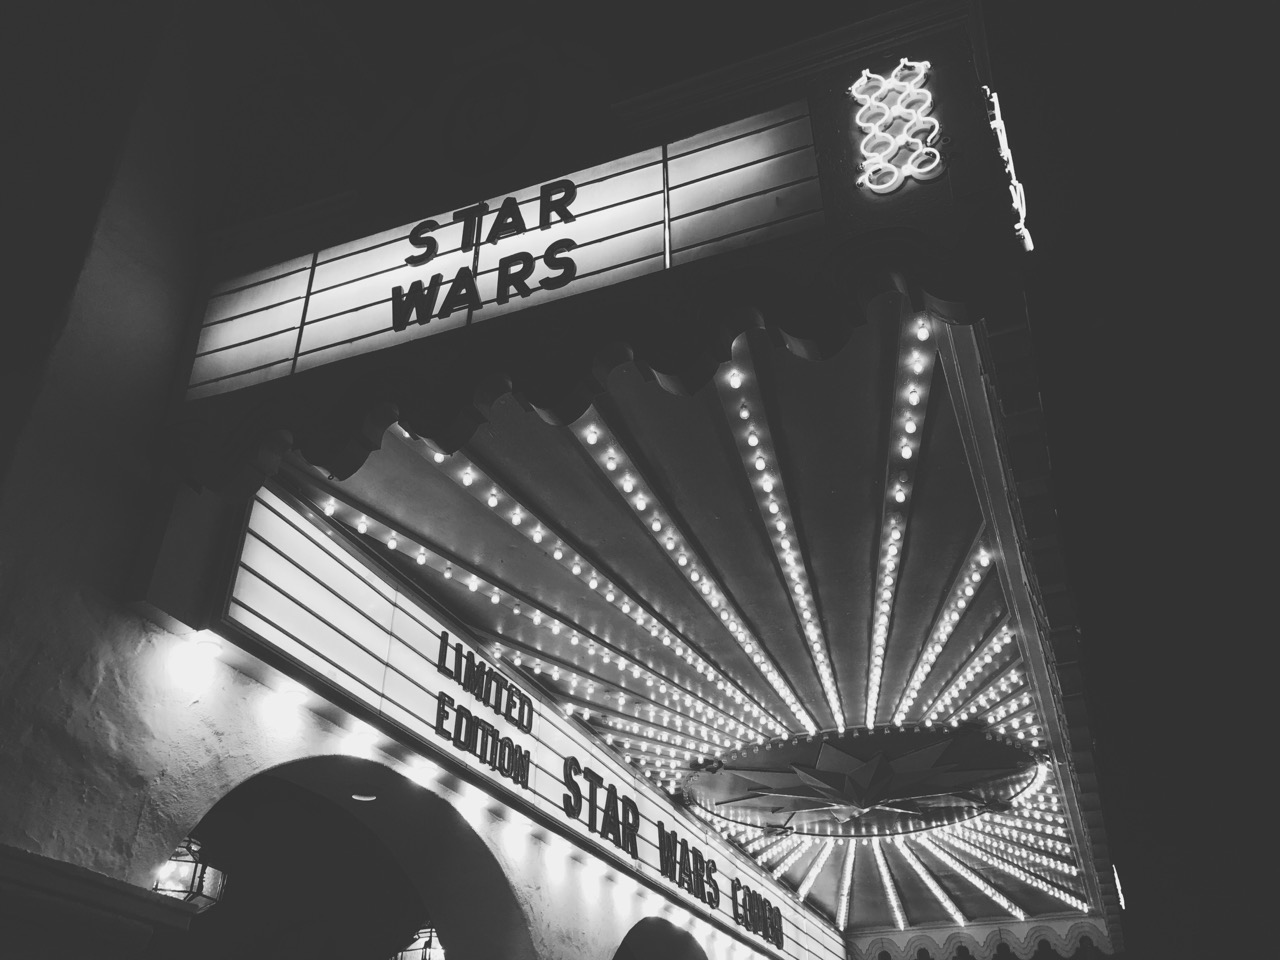 Star Wars at the Arlington